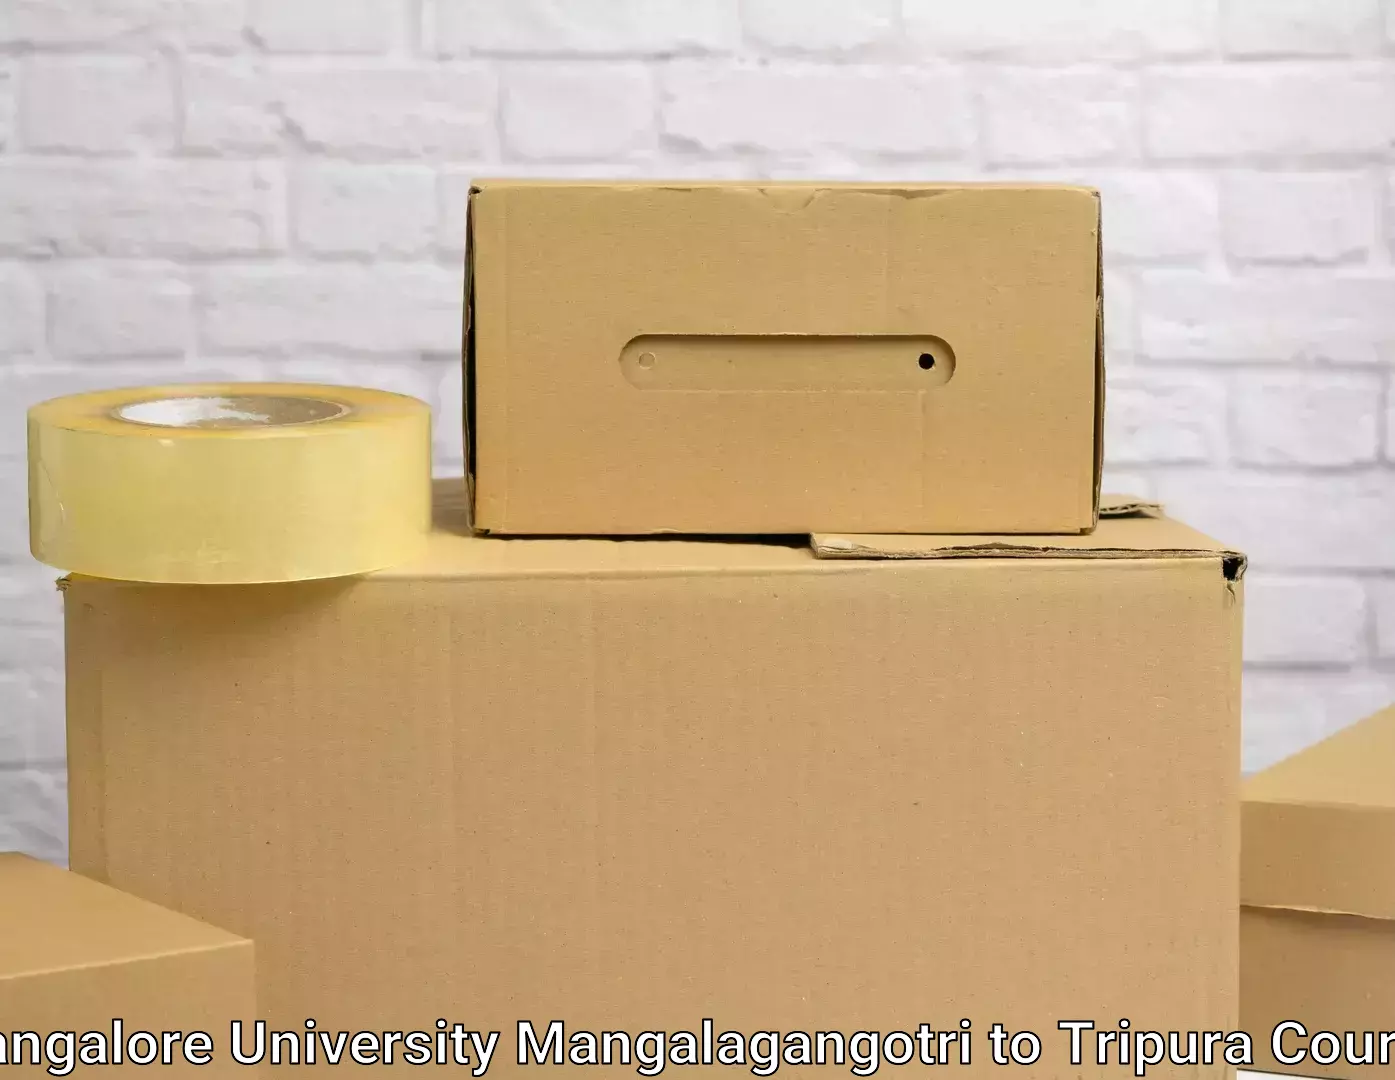 Home shifting experts Mangalore University Mangalagangotri to Kailashahar